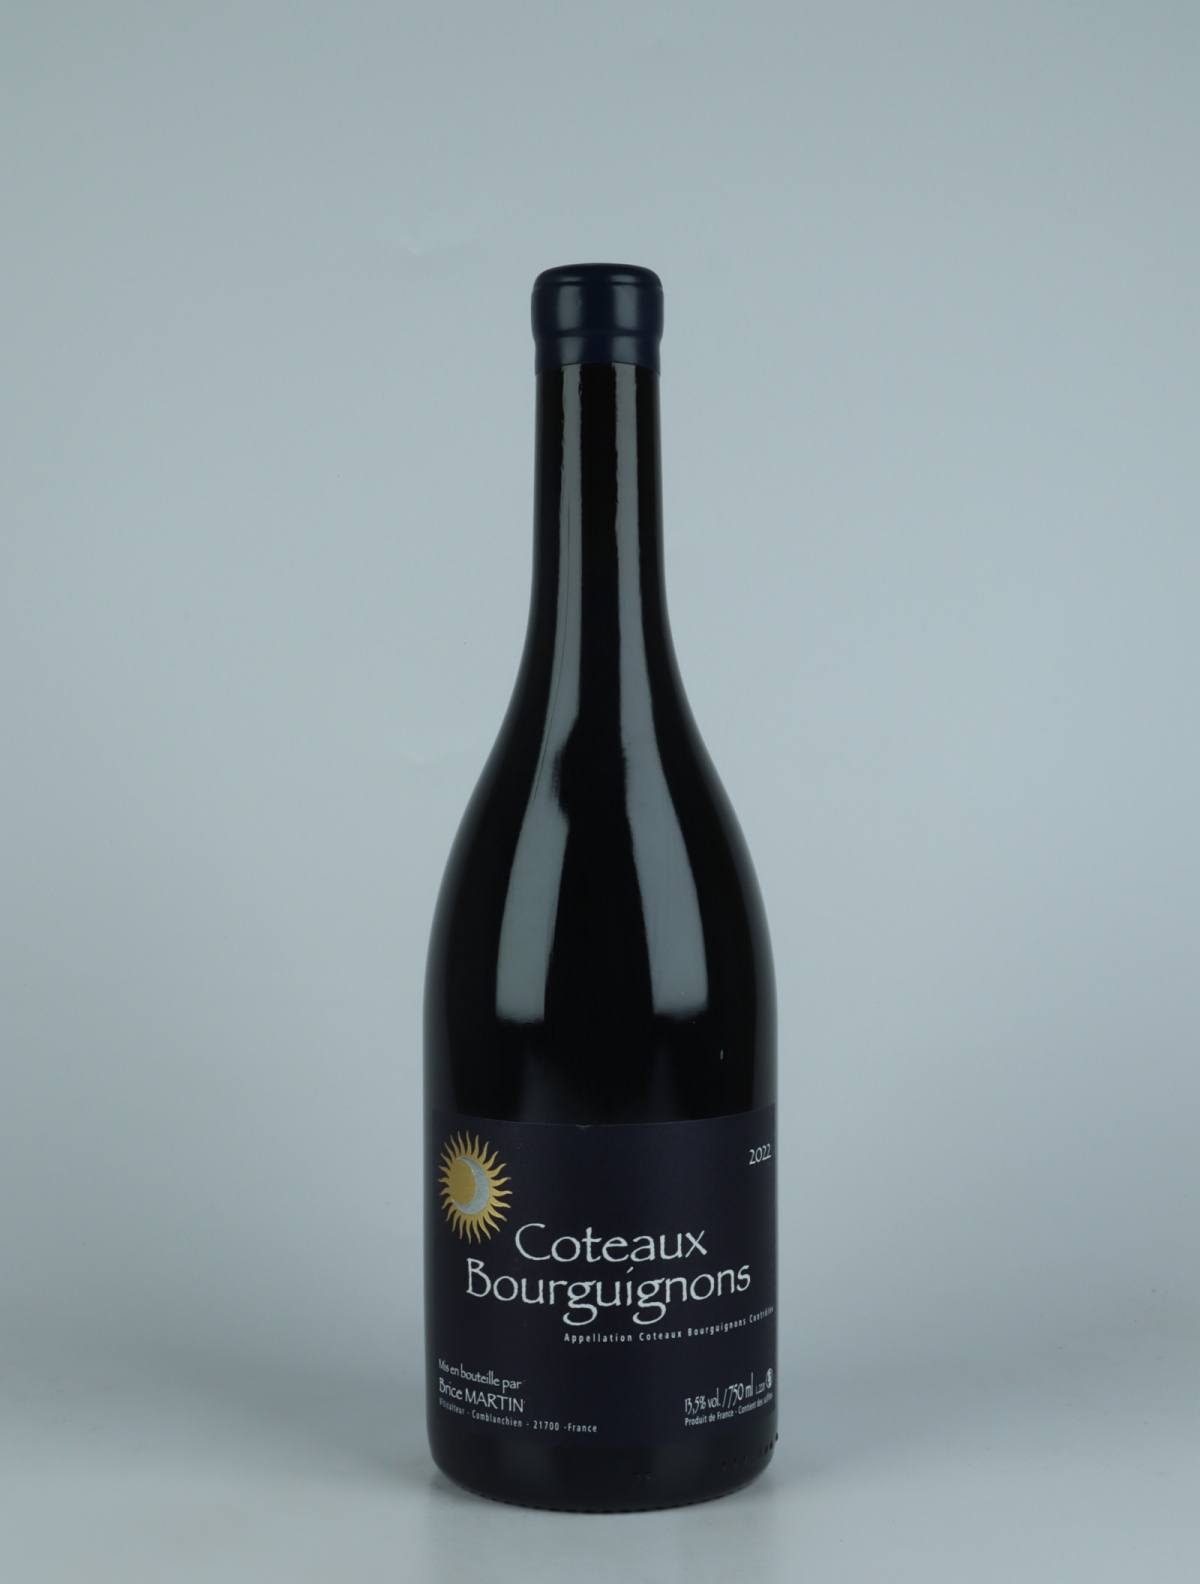 En flaske 2022 Coteaux Bourguignons Rødvin fra Brice Martin, Bourgogne i Frankrig